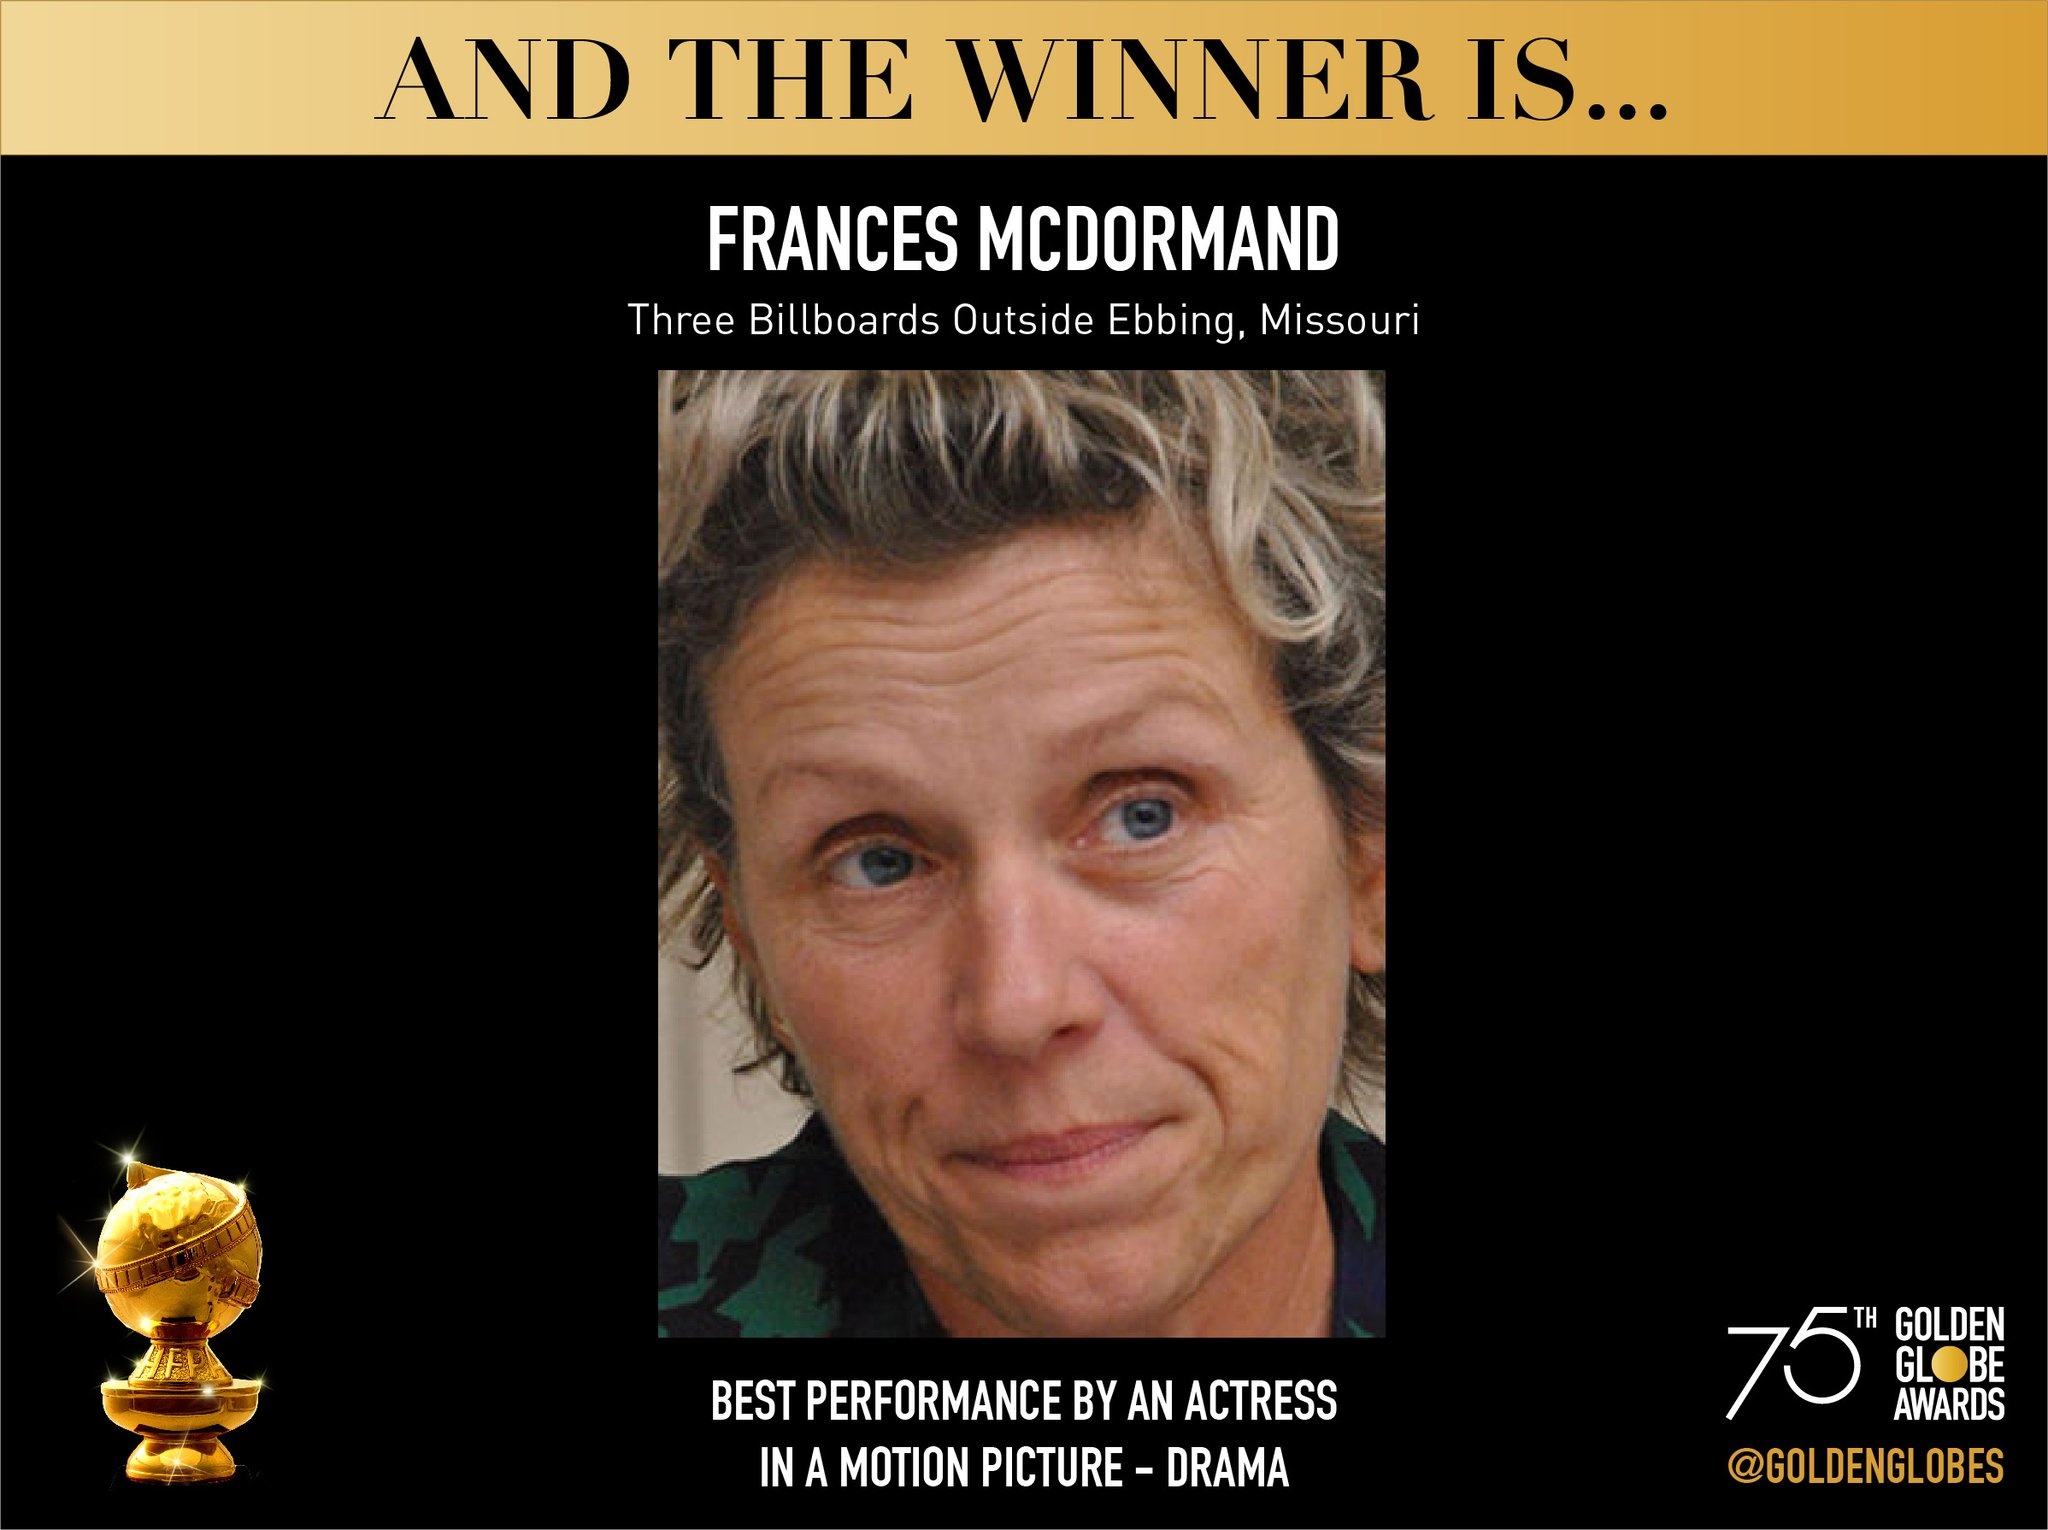 恭喜弗朗西斯·麦克道曼,凭借三块广告牌获得了第75届金球奖剧情类